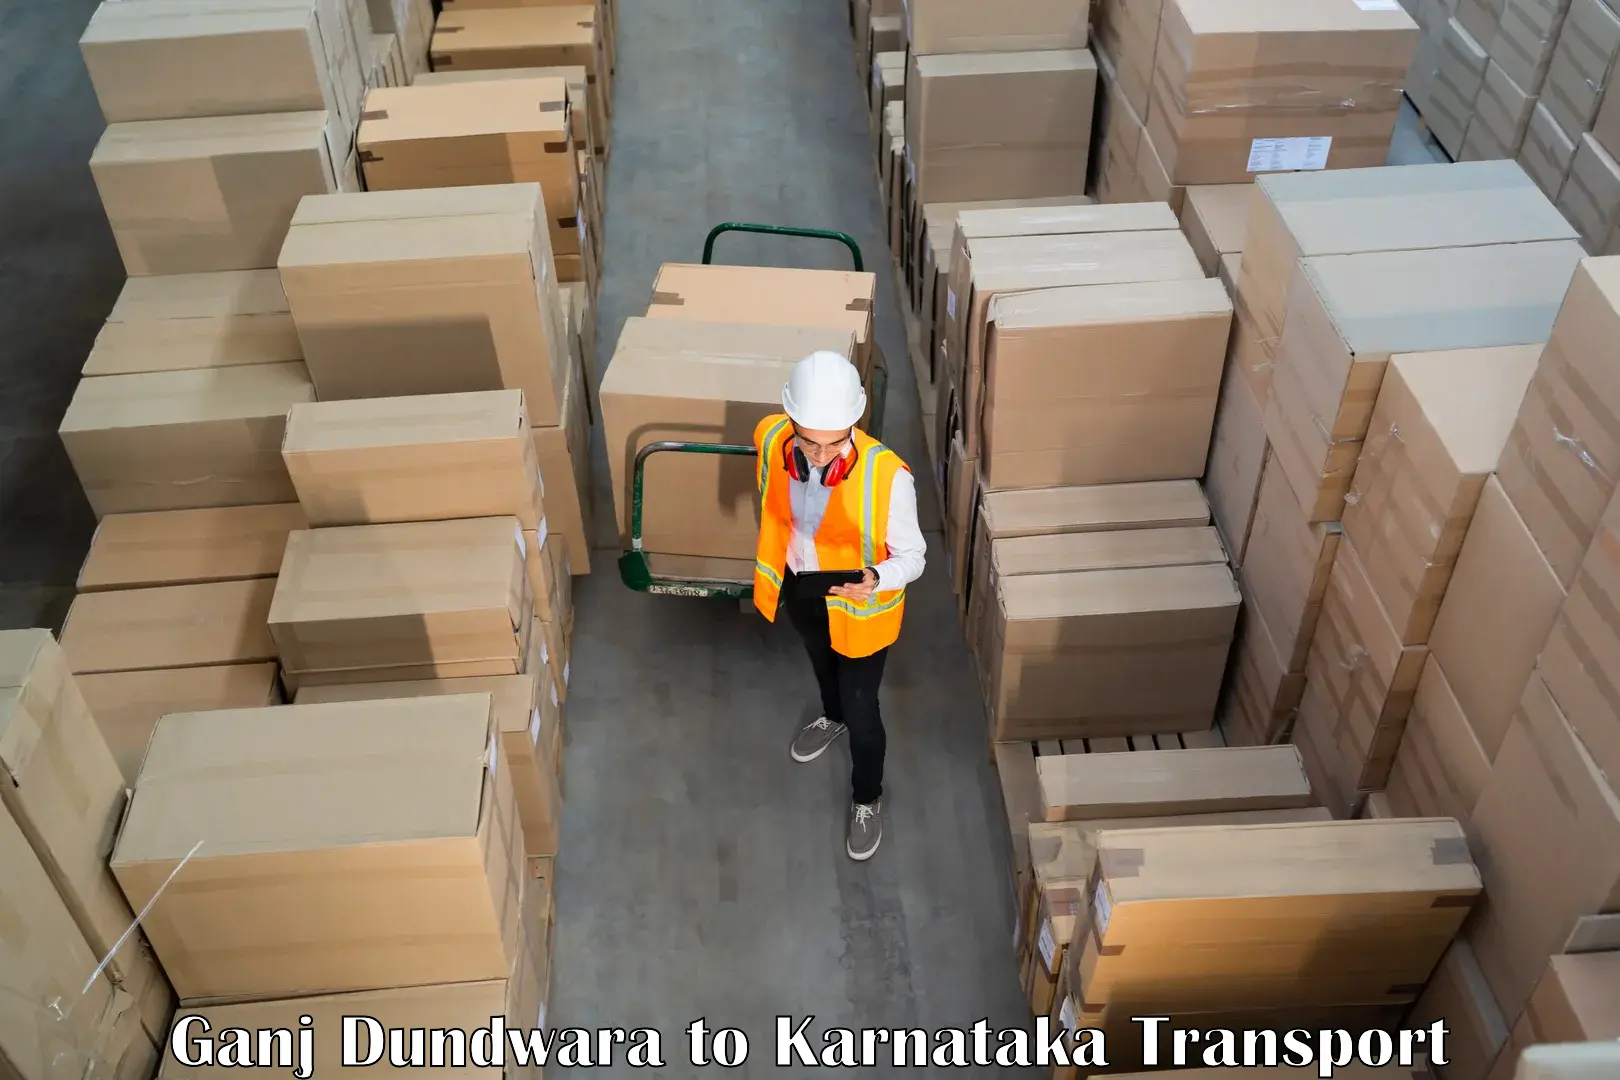 Daily parcel service transport in Ganj Dundwara to Pavagada